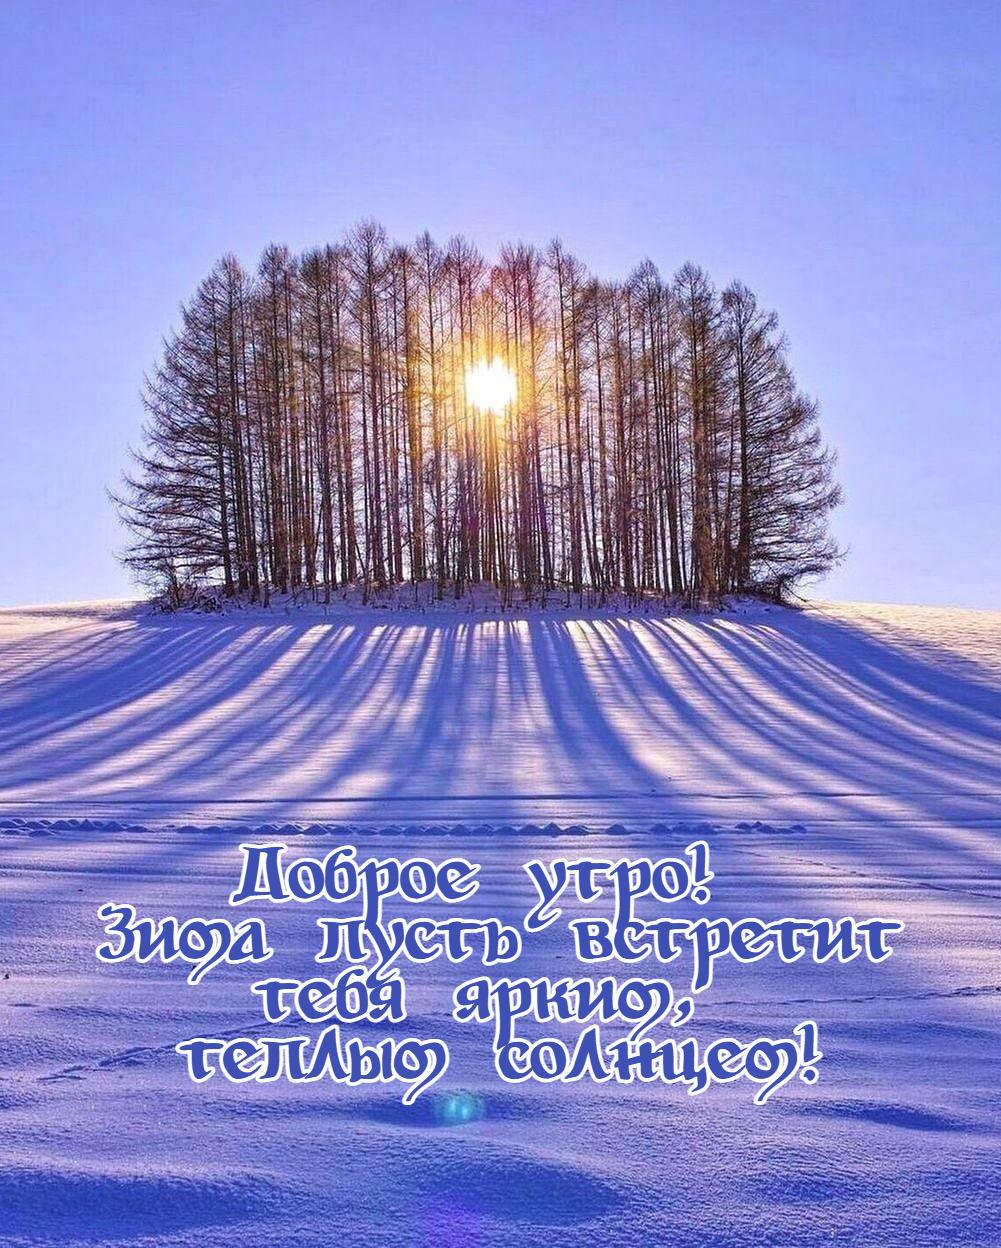 28 Февраля - Воскресенье! С последним днём зимы! Доброе утро и хорошего  настроения! — Видео | ВКонтакте